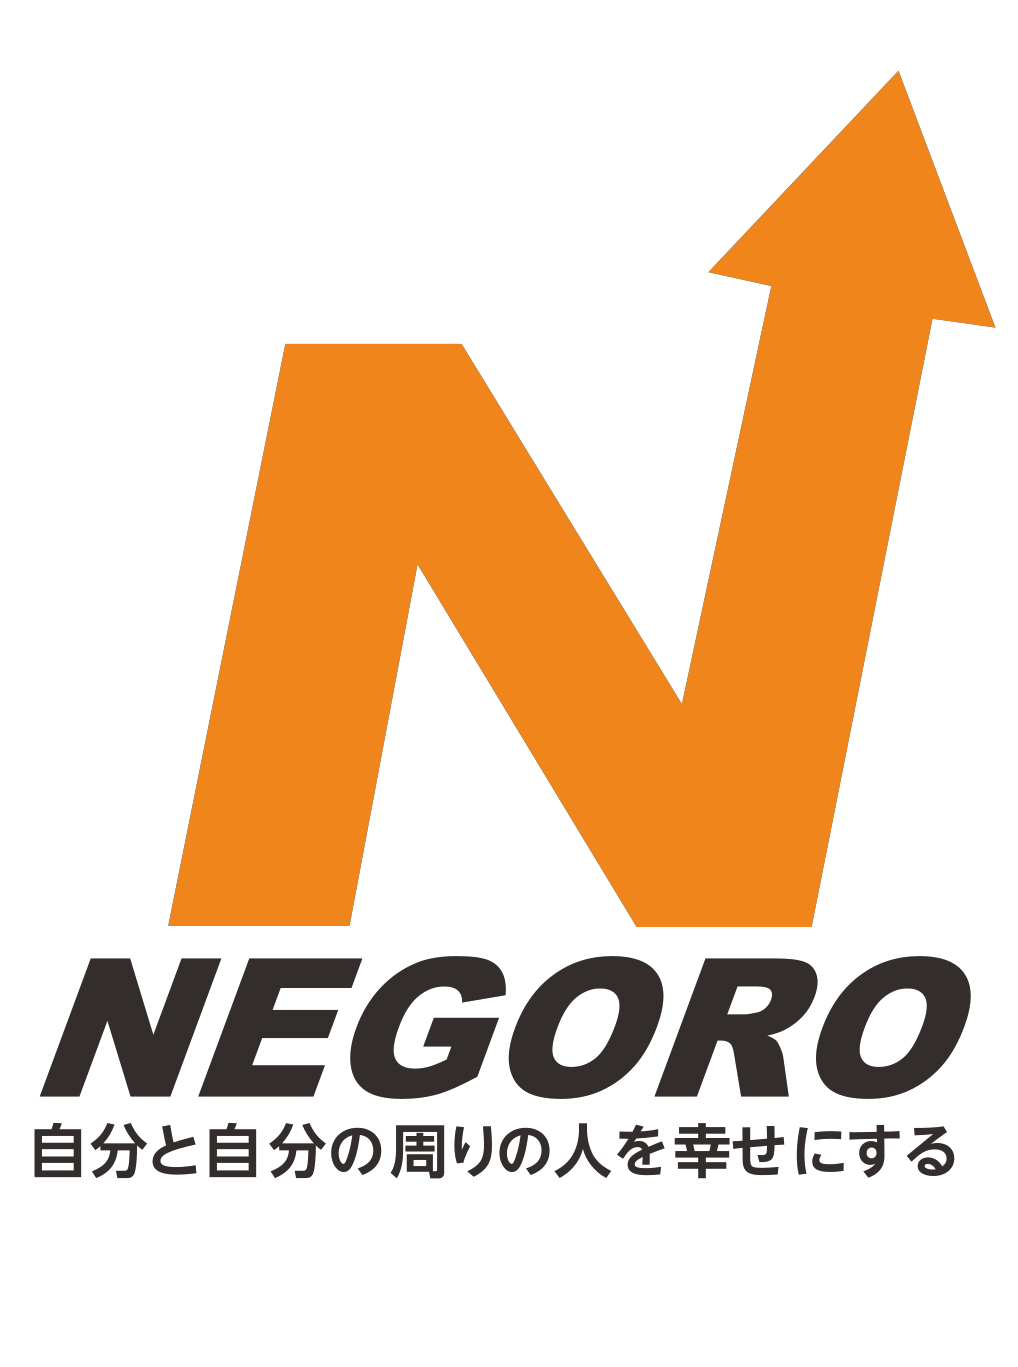 ネゴロ株式会社